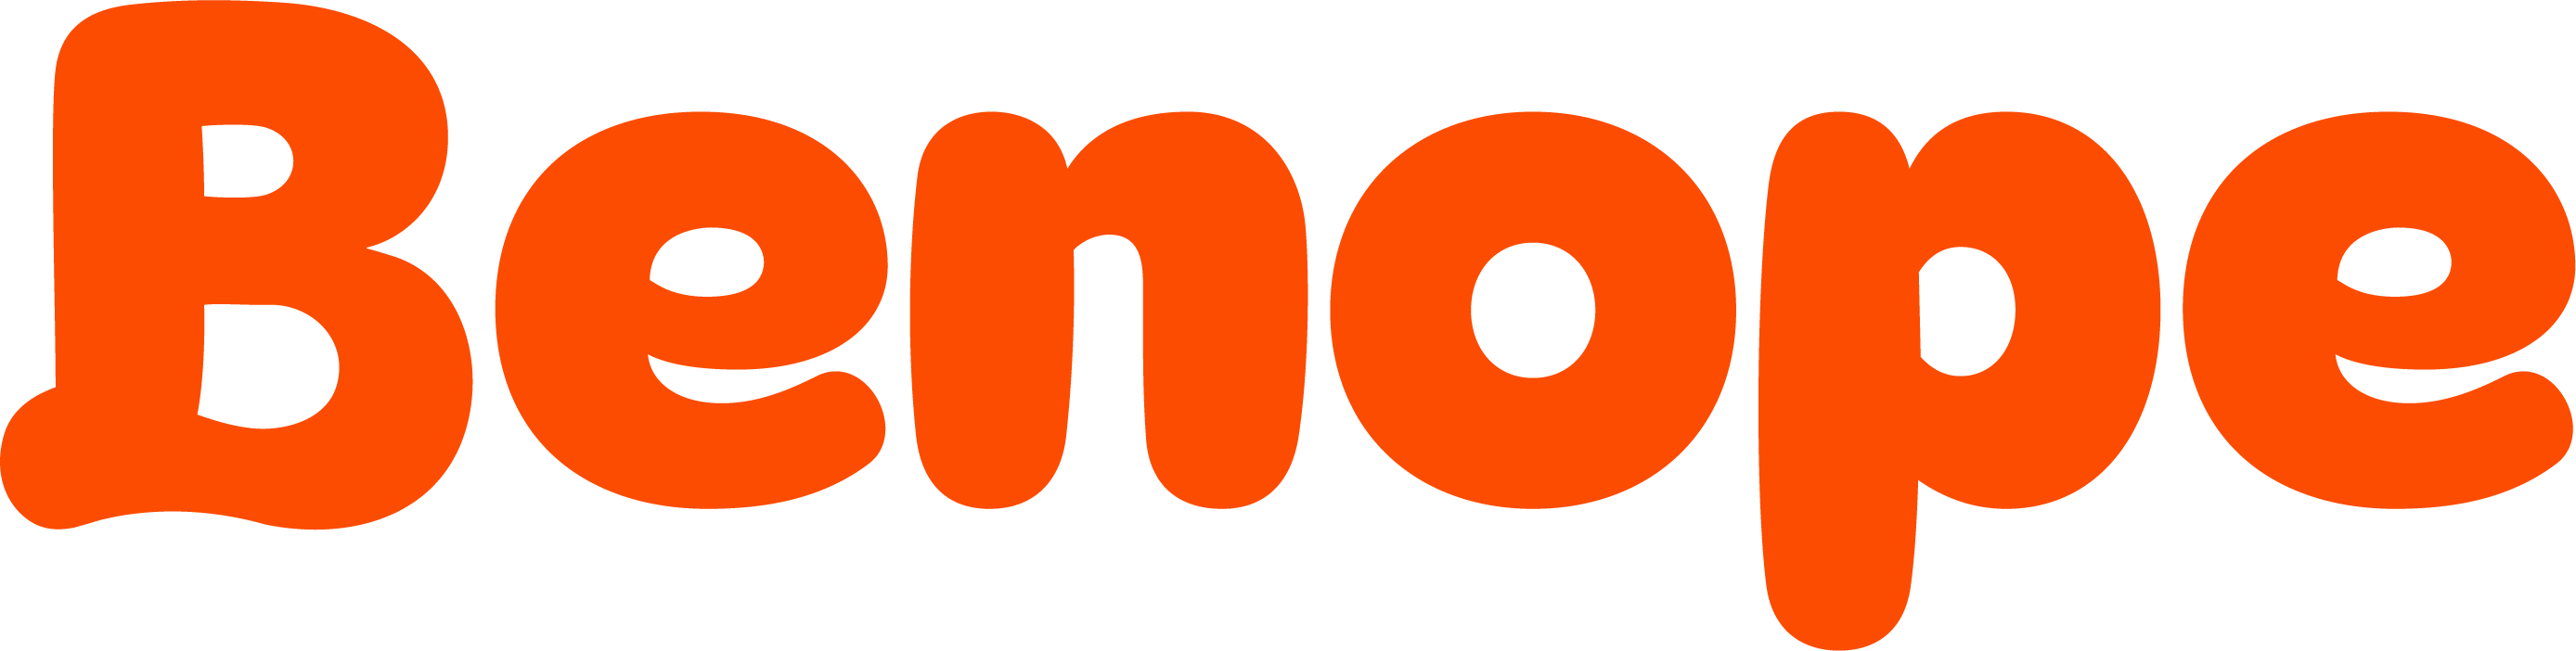 logo_orange.png